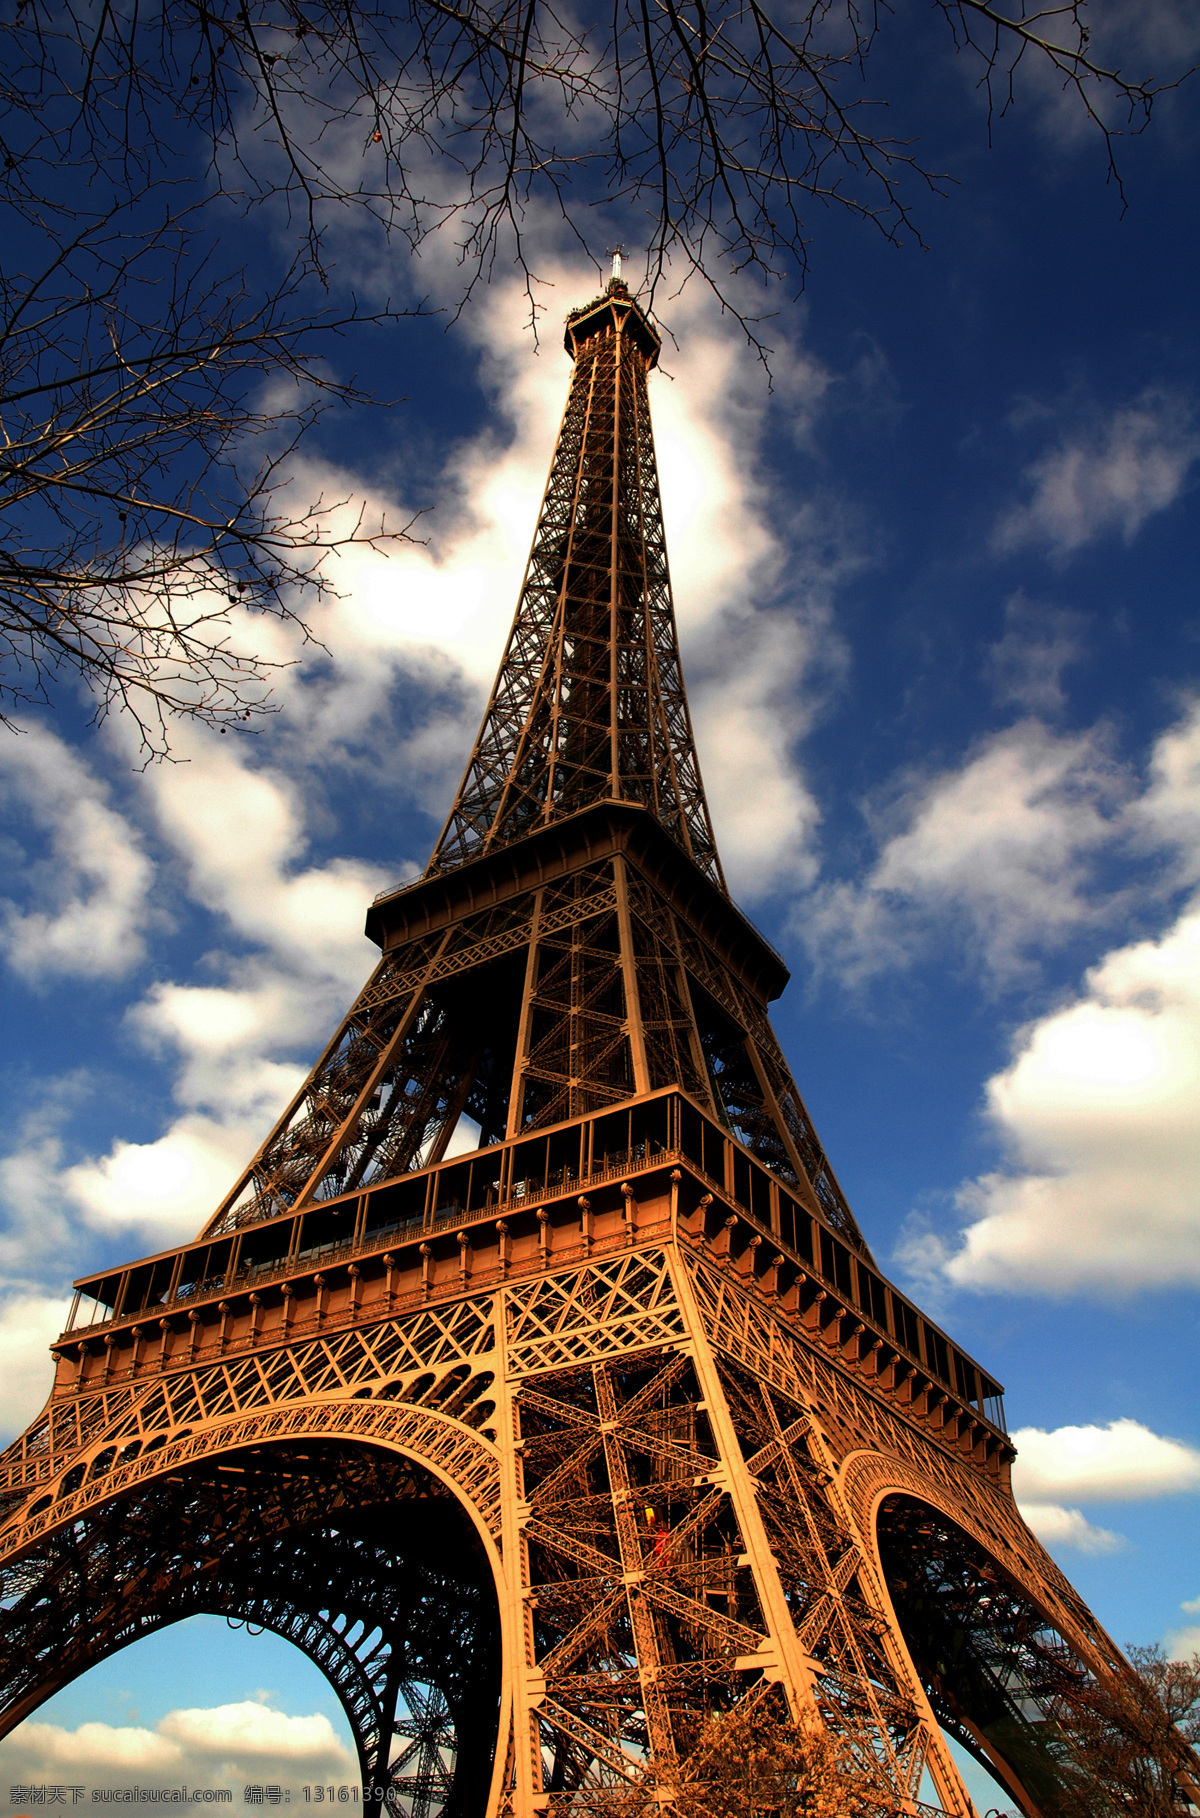 巴黎 艾菲尔铁塔 蓝天 白云 树枝 建筑风光 城市图片 法国建筑 巴黎风光 铁塔 都市风光 美丽风光 美丽风景 名胜古迹 旅游胜地 建筑设计 环境家居